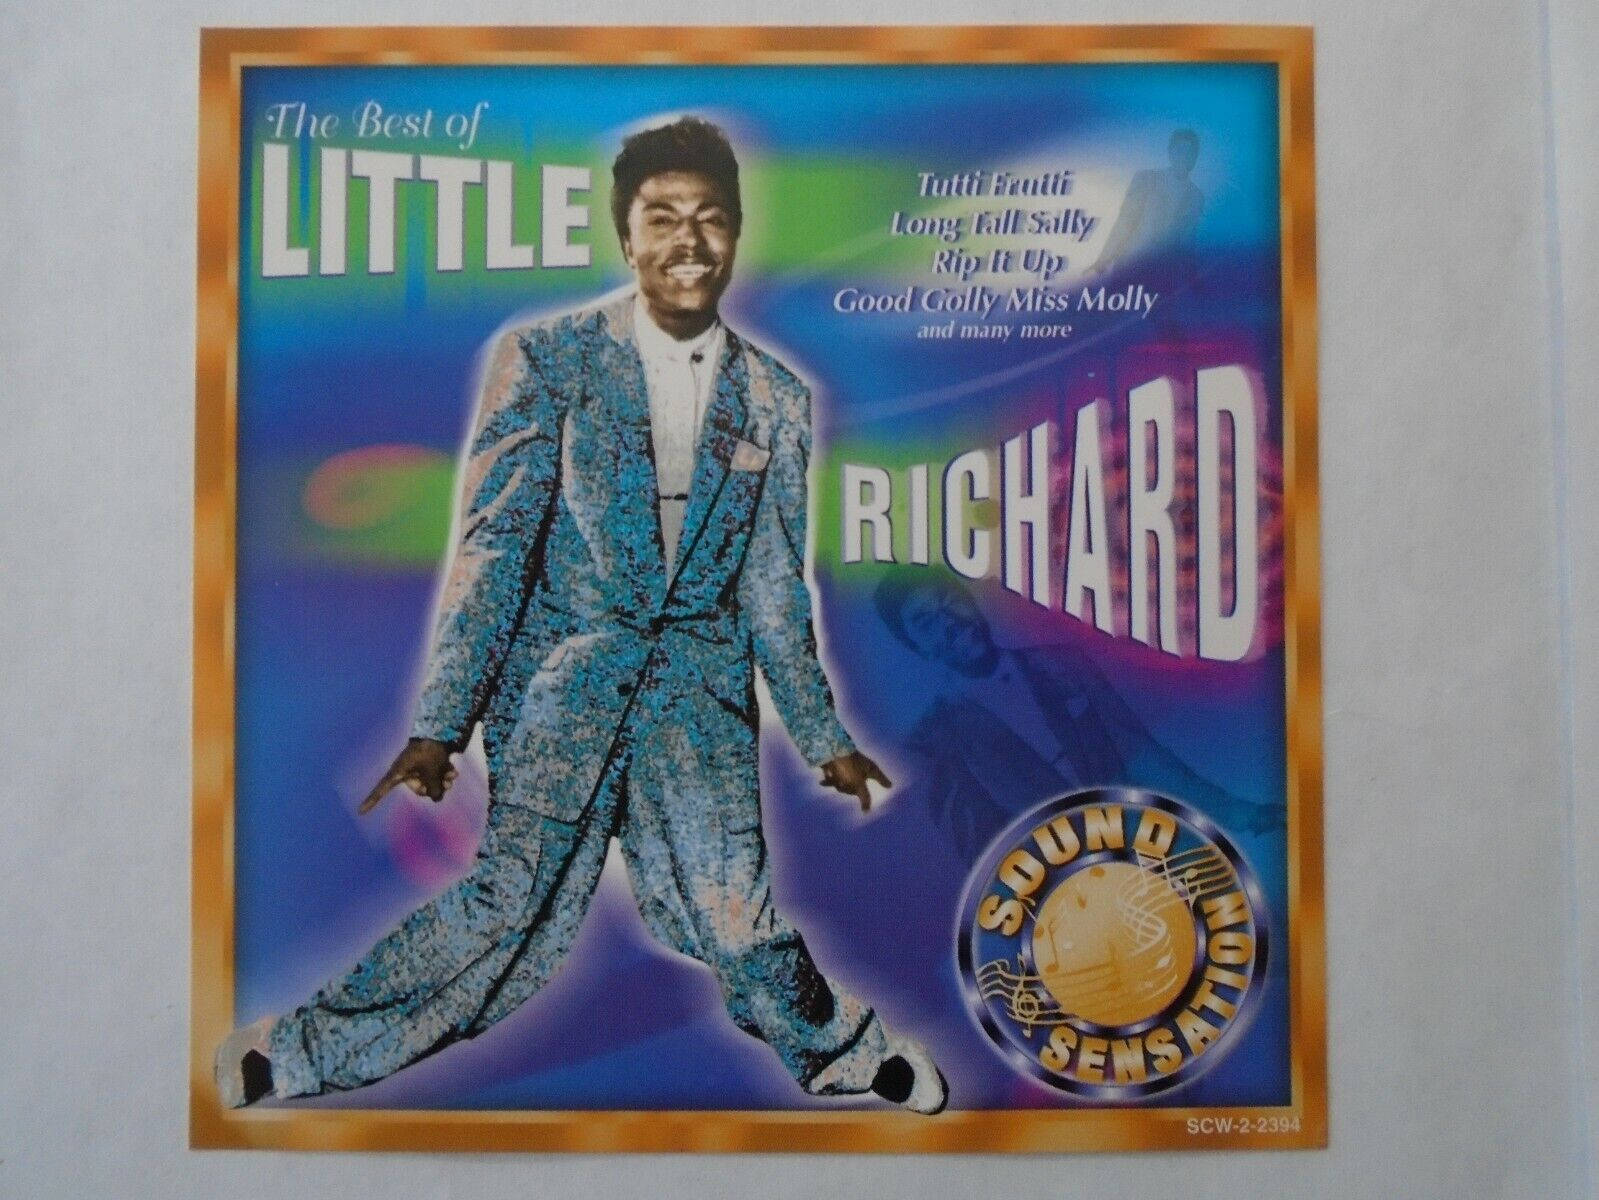 The Best Of Little Richard CD Cover Wallpaper